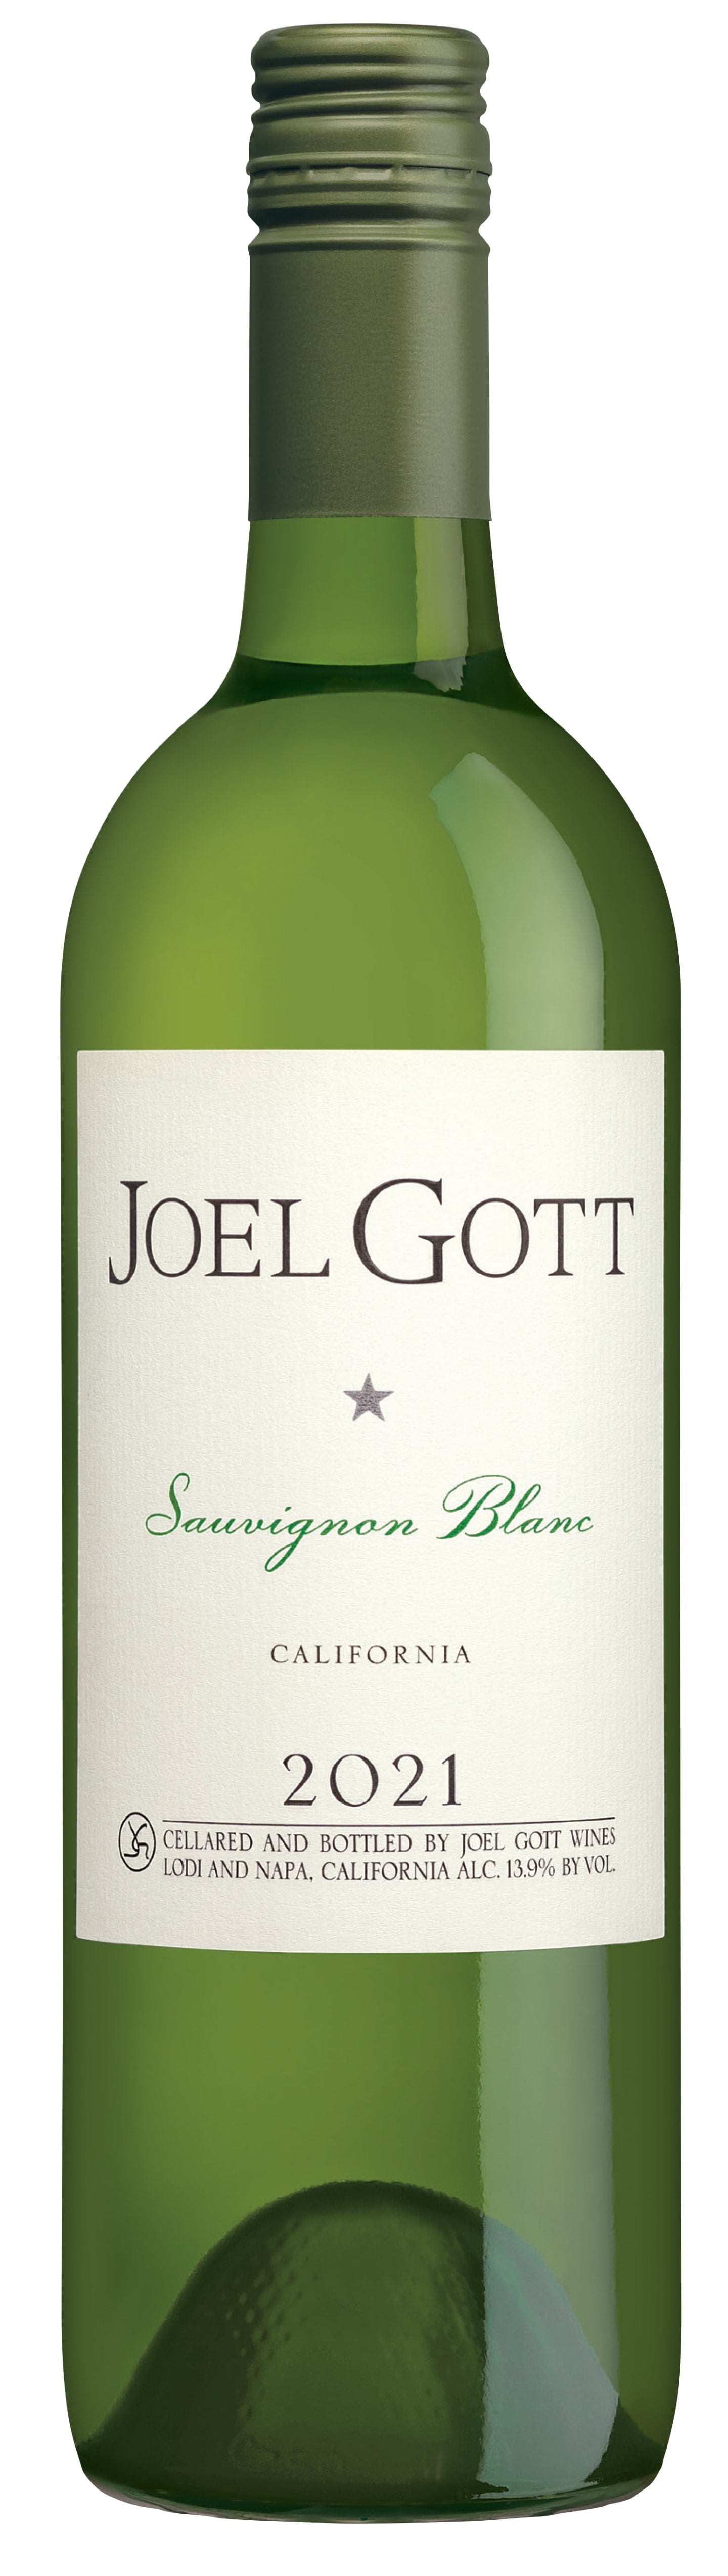 Joel Gott Sauvignon Blanc 2021